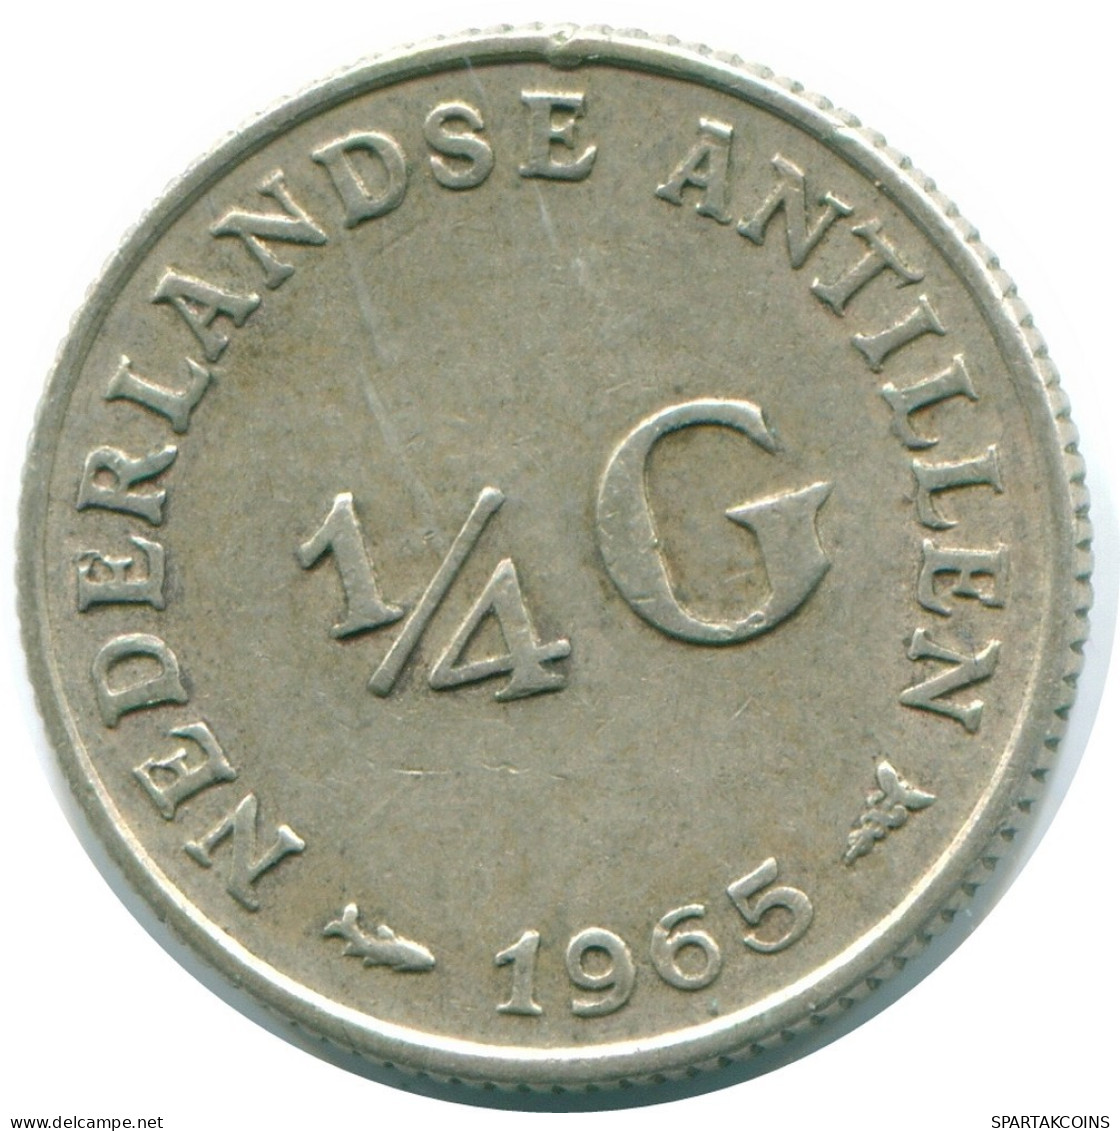 1/4 GULDEN 1965 NIEDERLÄNDISCHE ANTILLEN SILBER Koloniale Münze #NL11281.4.D.A - Niederländische Antillen